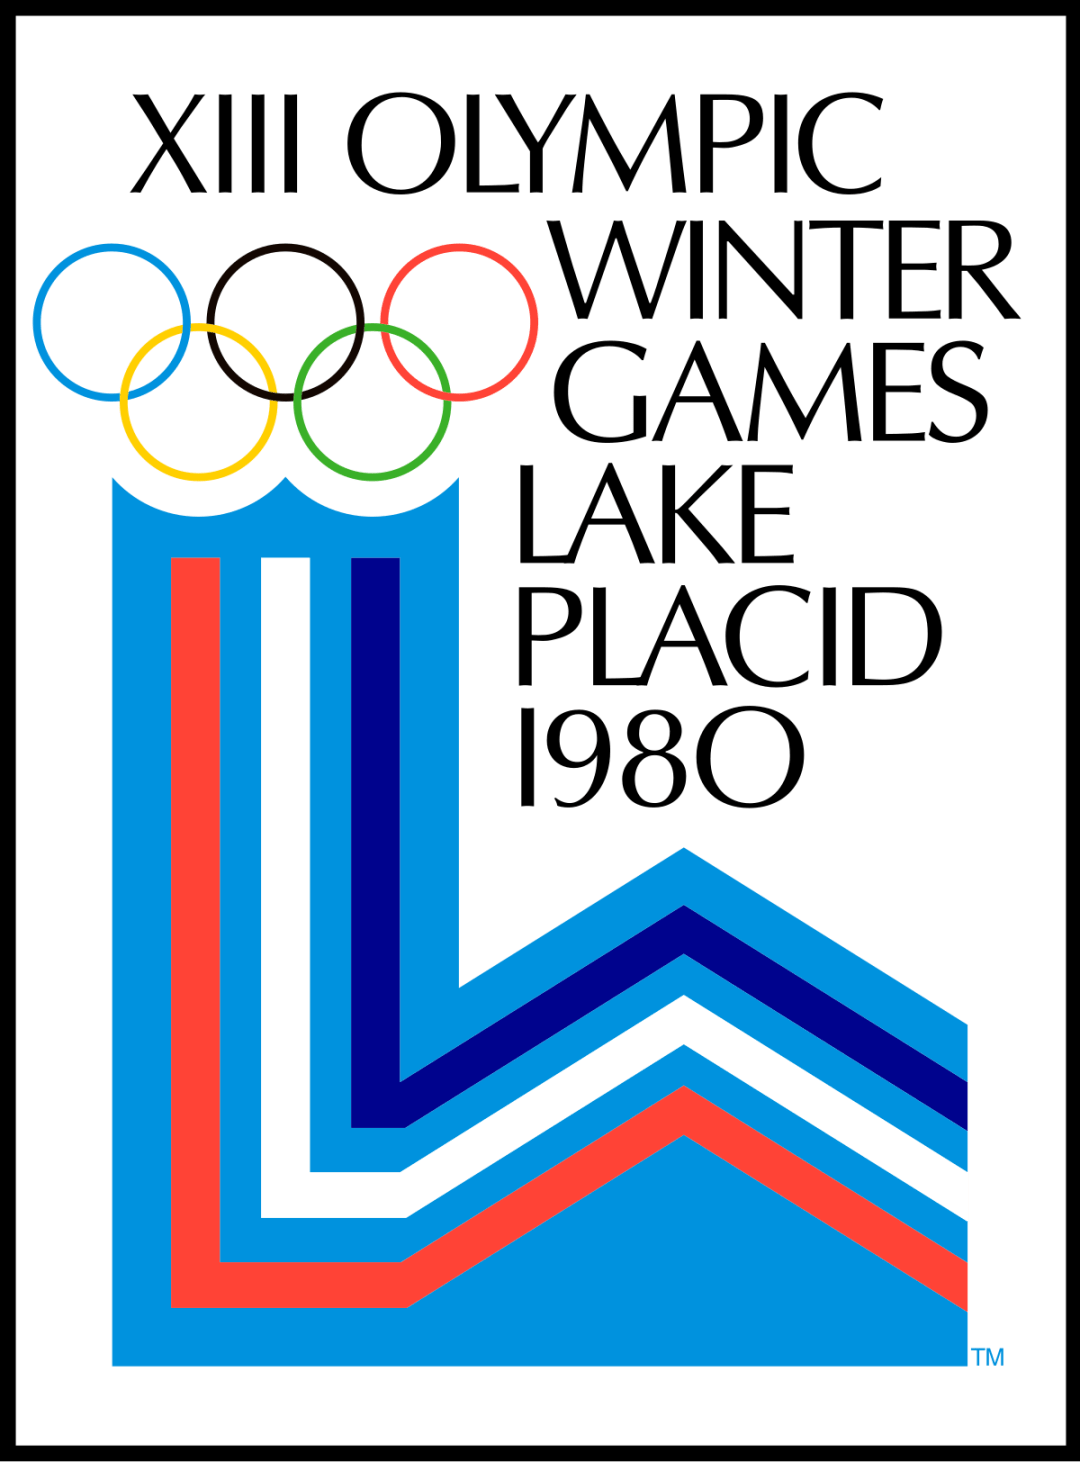 北京冬奥会英文海报图片